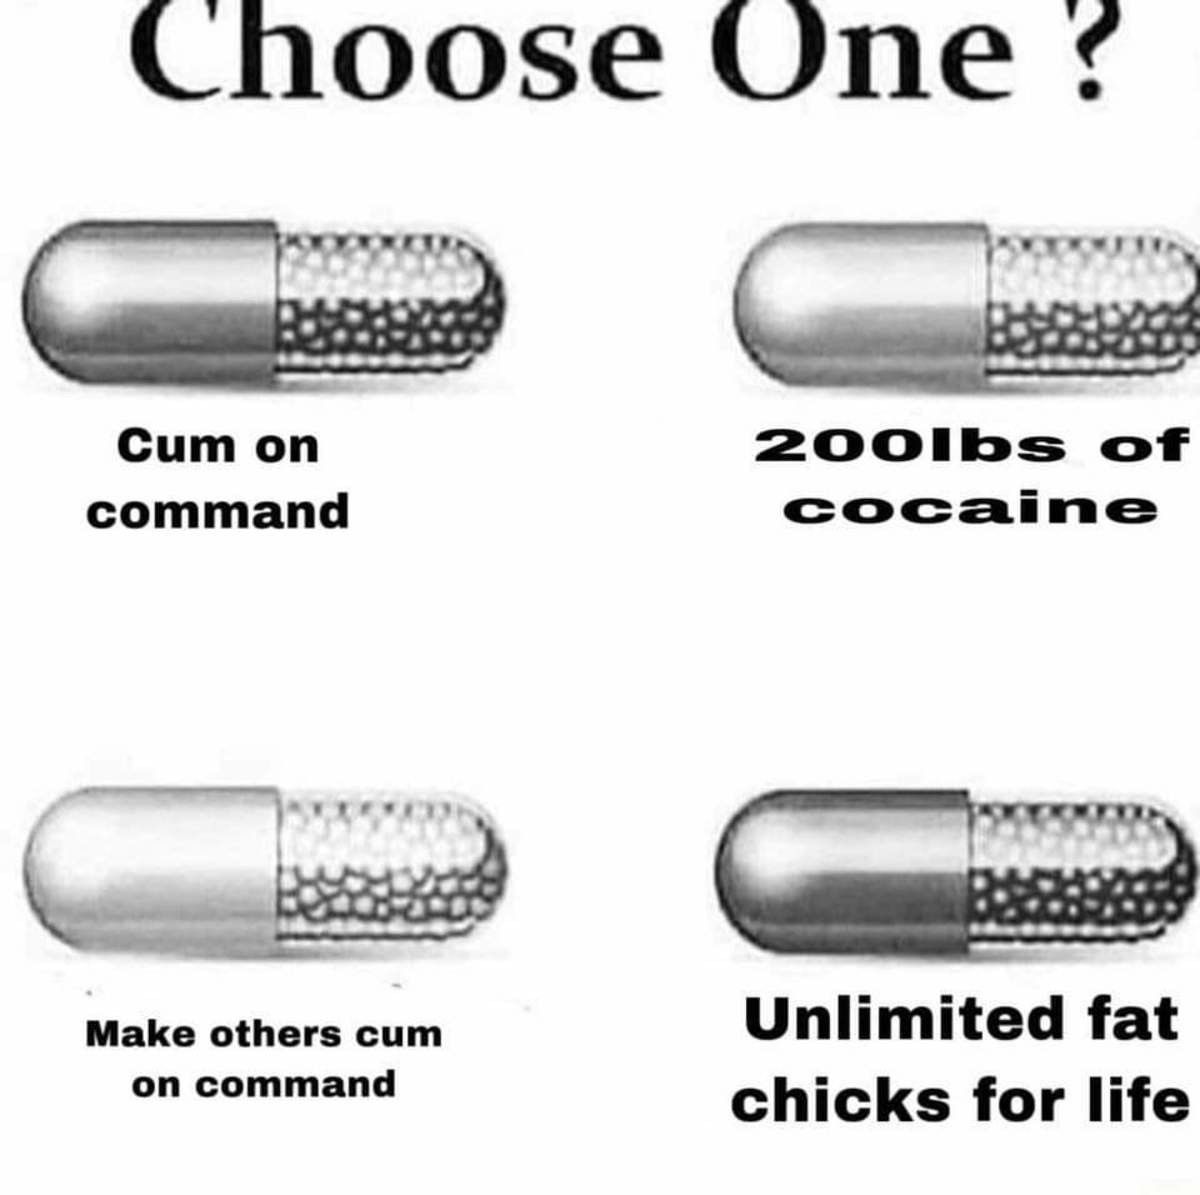 hard choice...